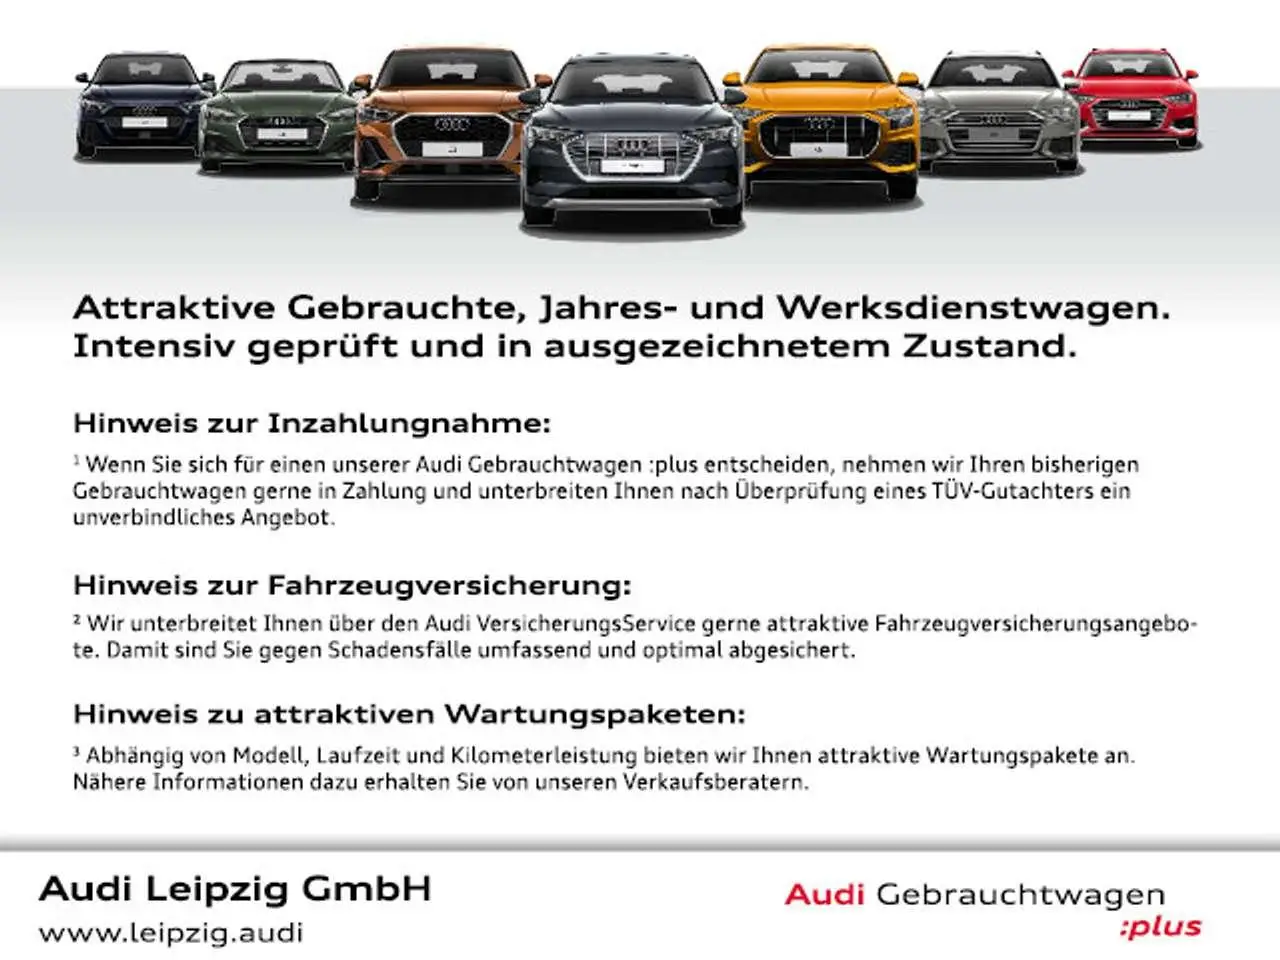 Photo 1 : Audi Q7 2020 Diesel